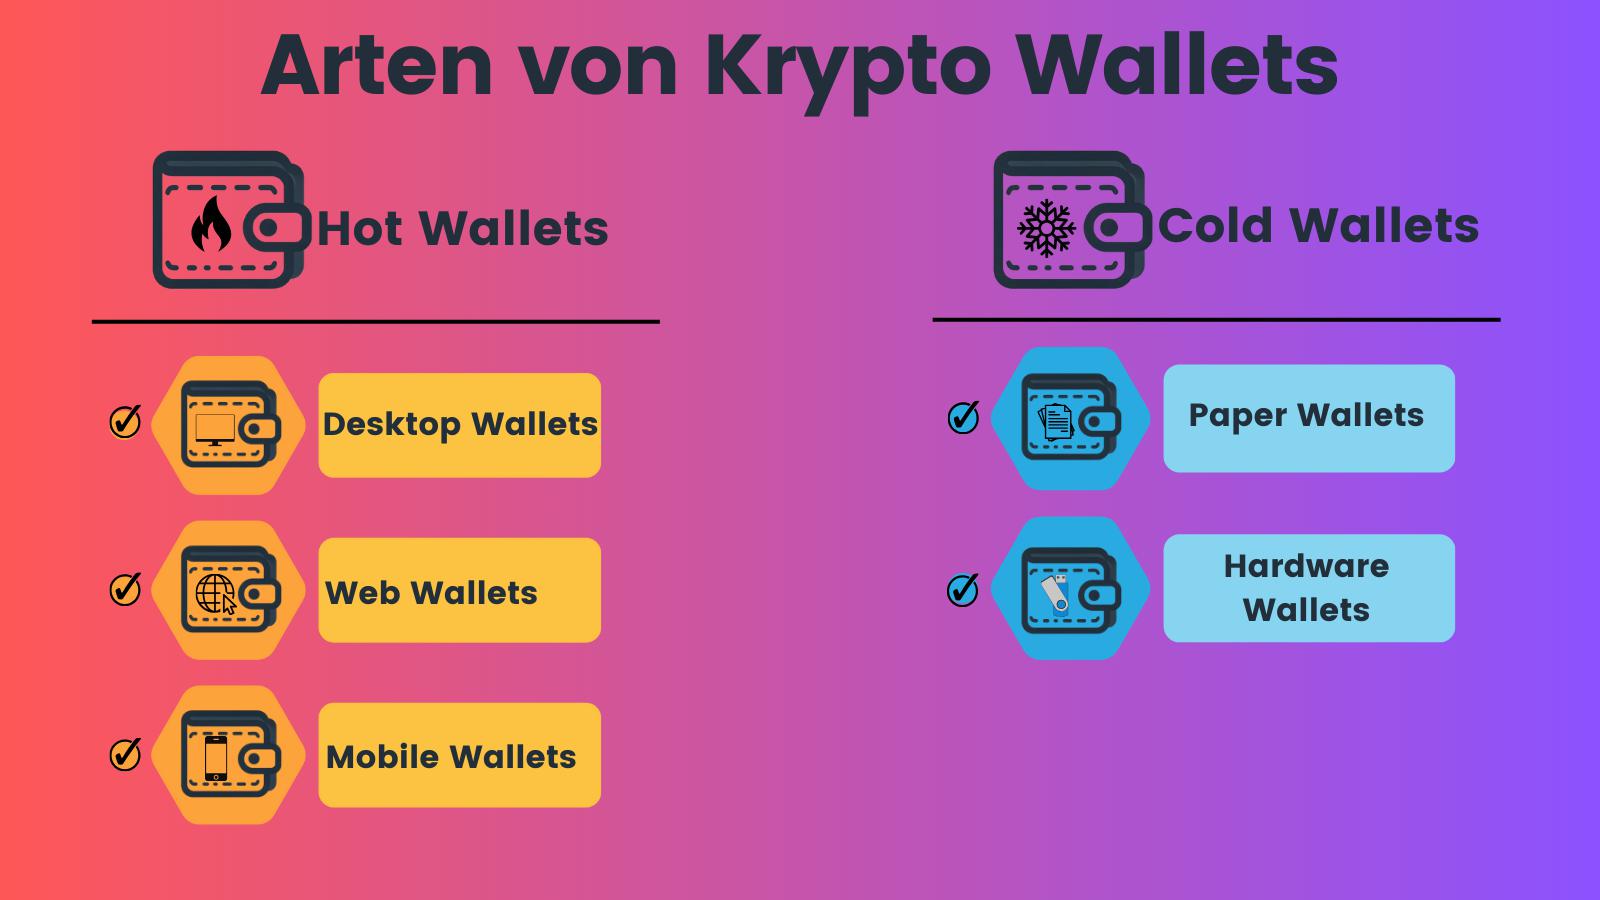 Arten von Krypto-Wallets: Hot Wallets mit Desktop, Web, Mobile und Cold Wallets mit Papier, Hardware